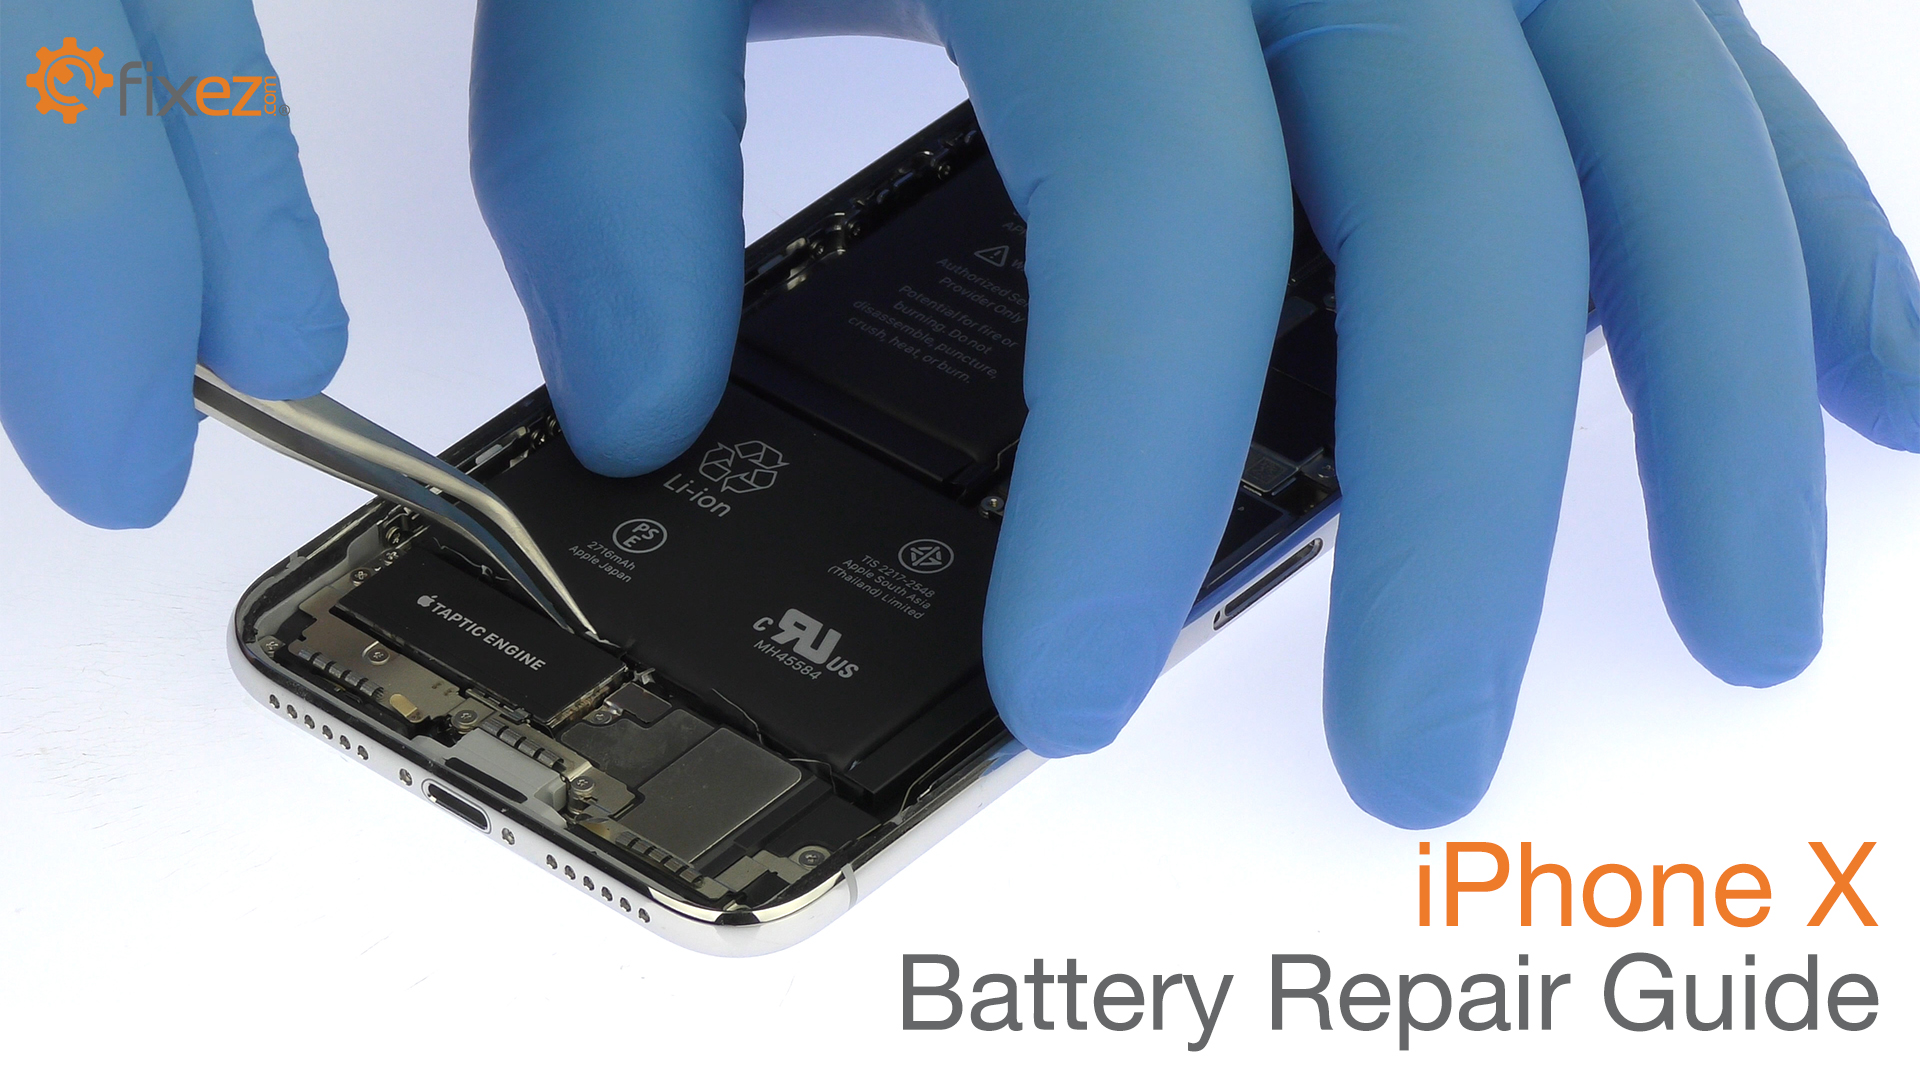 iPhone X Battery Repair Guide